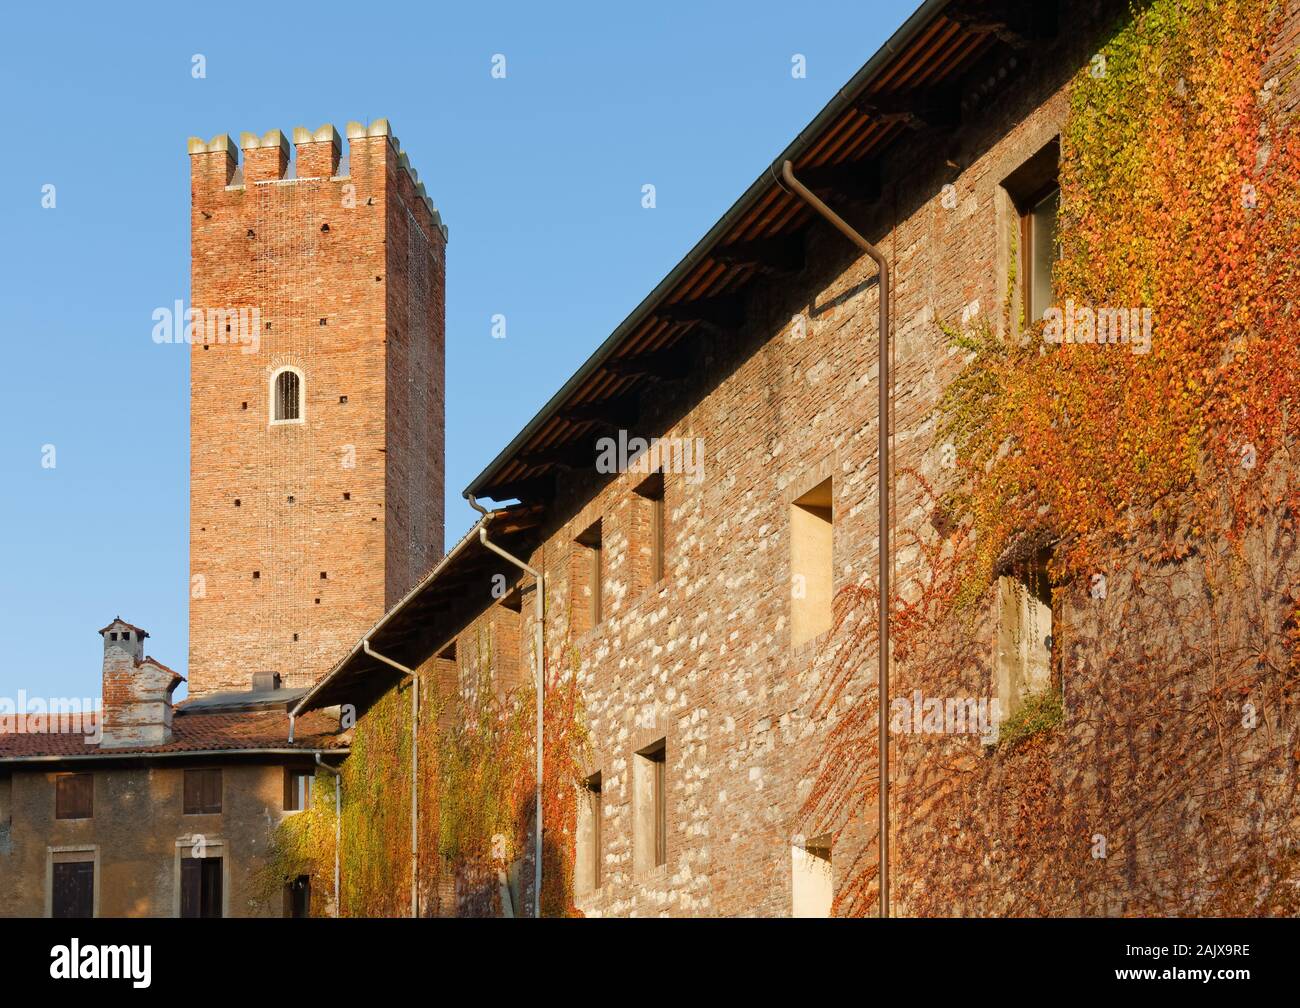 Vista della facciata del Palazzo del Territorio durante il periodo invernale in Vicenza, Italia, con la torre Coxina in background Foto Stock